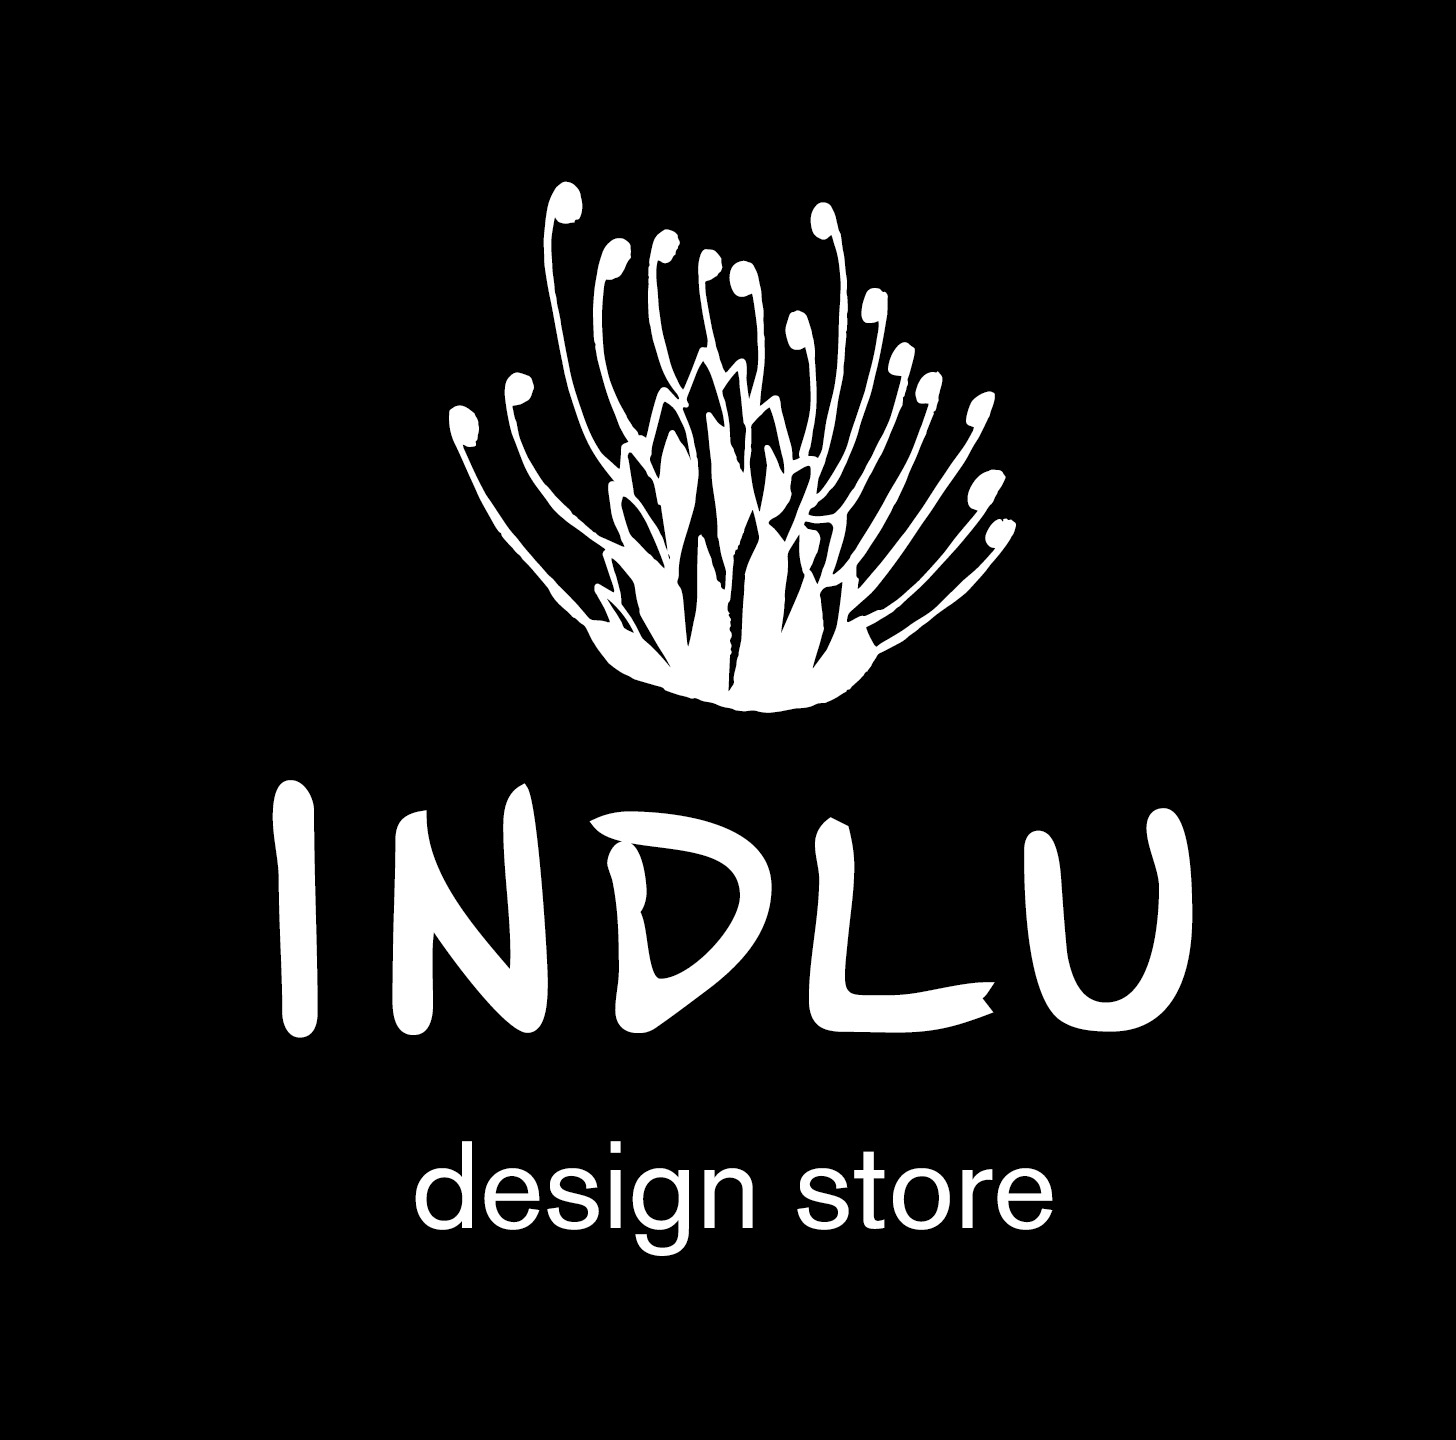 INDLU design store